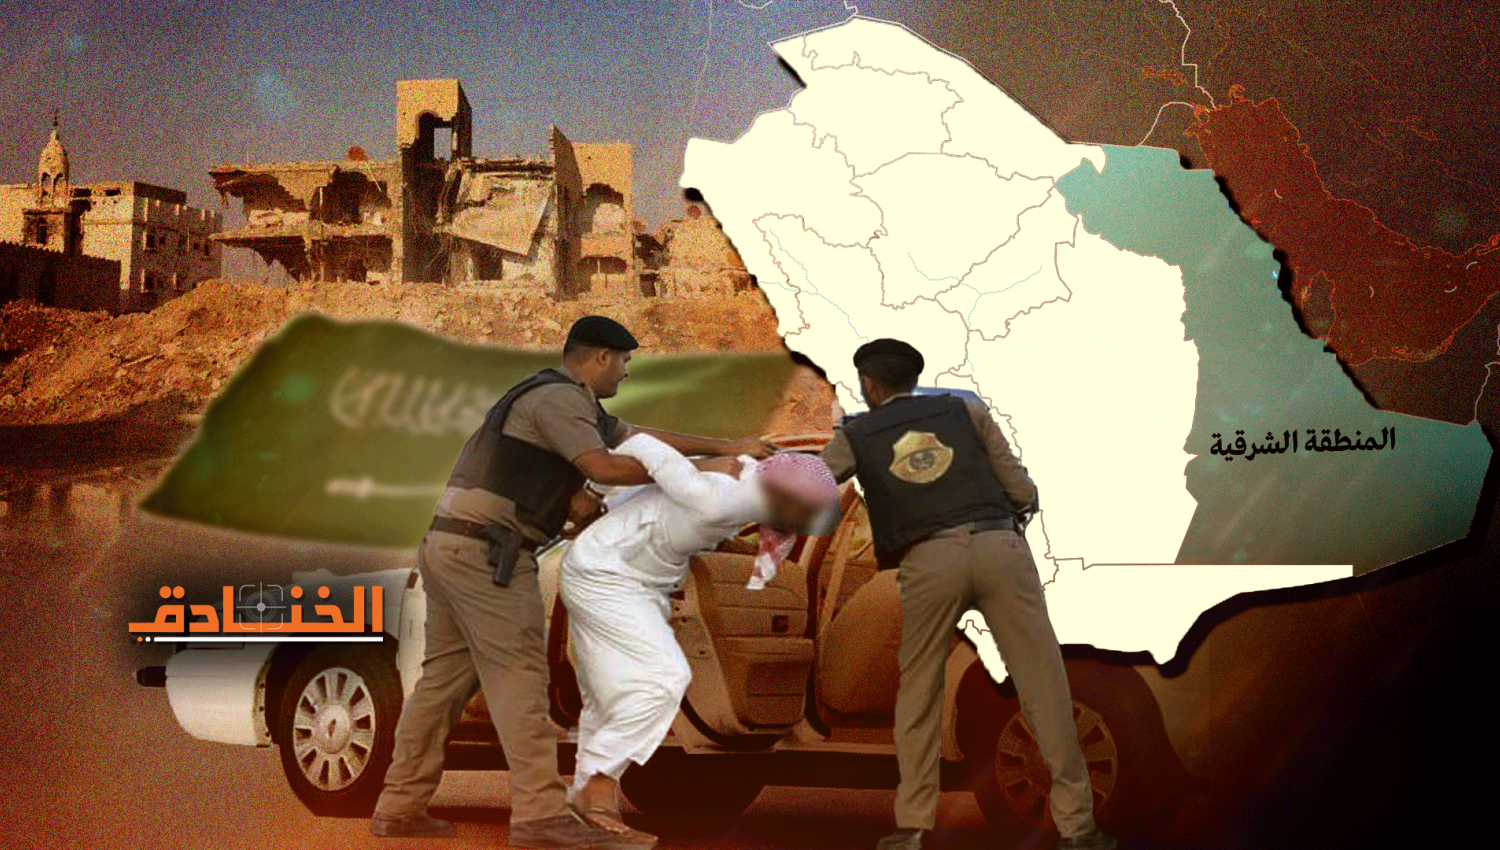 المنطقة الشرقية في السعودية: انتهاكات "فوق الخيال"